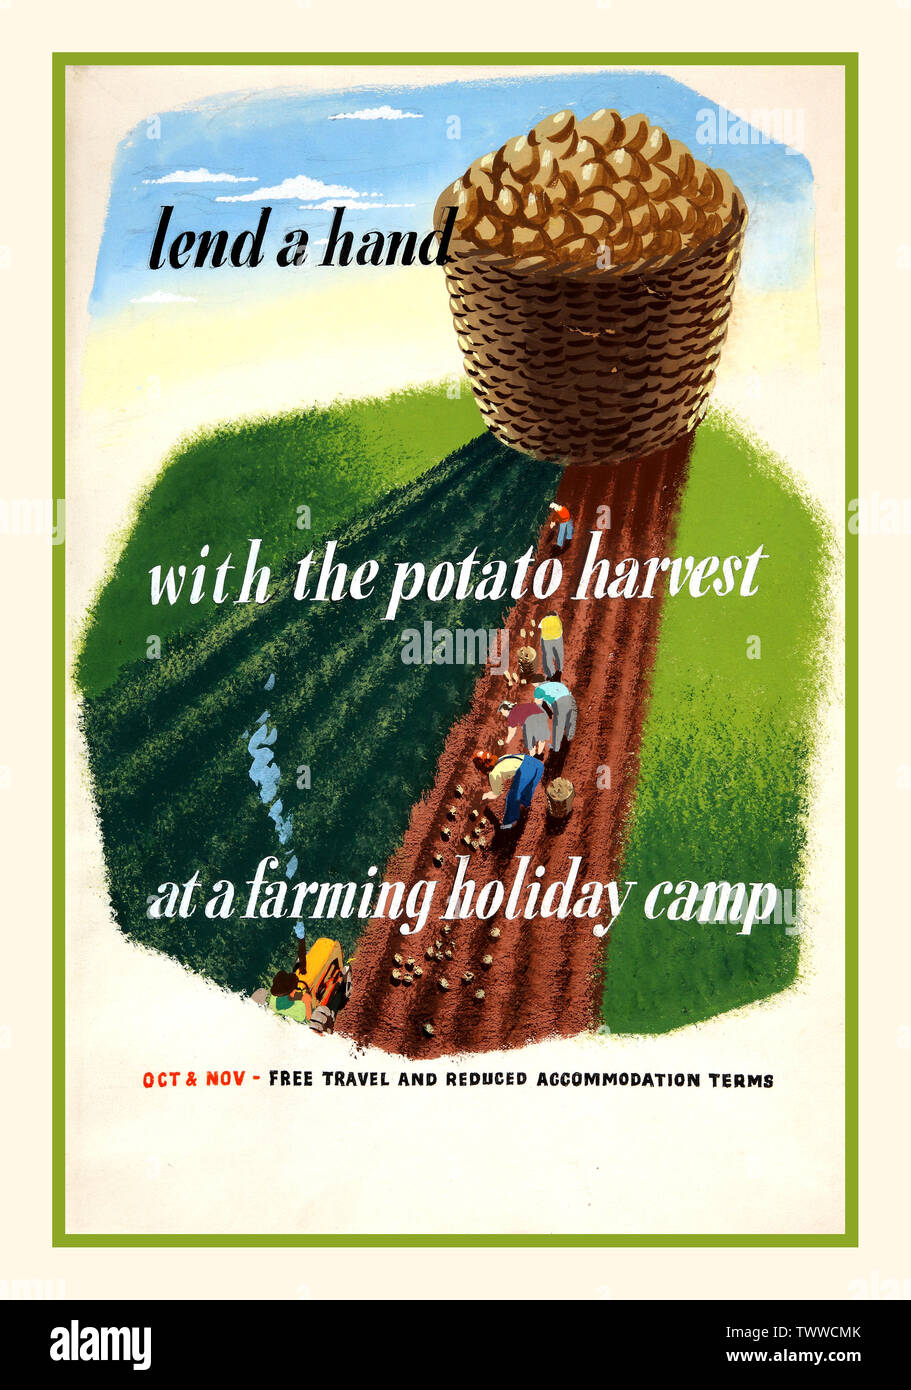 Vintage WW2 il tempo di guerra la produzione alimentare raccolto appello di Propaganda Poster UK "dare una mano con il raccolto di patate in un allevamento holiday camp" "Ottobre e Novembre la corsa libera - e ridotto alloggio termini" 1940 la produzione alimentare la guerra mondiale 2 Agricoltura appello Foto Stock